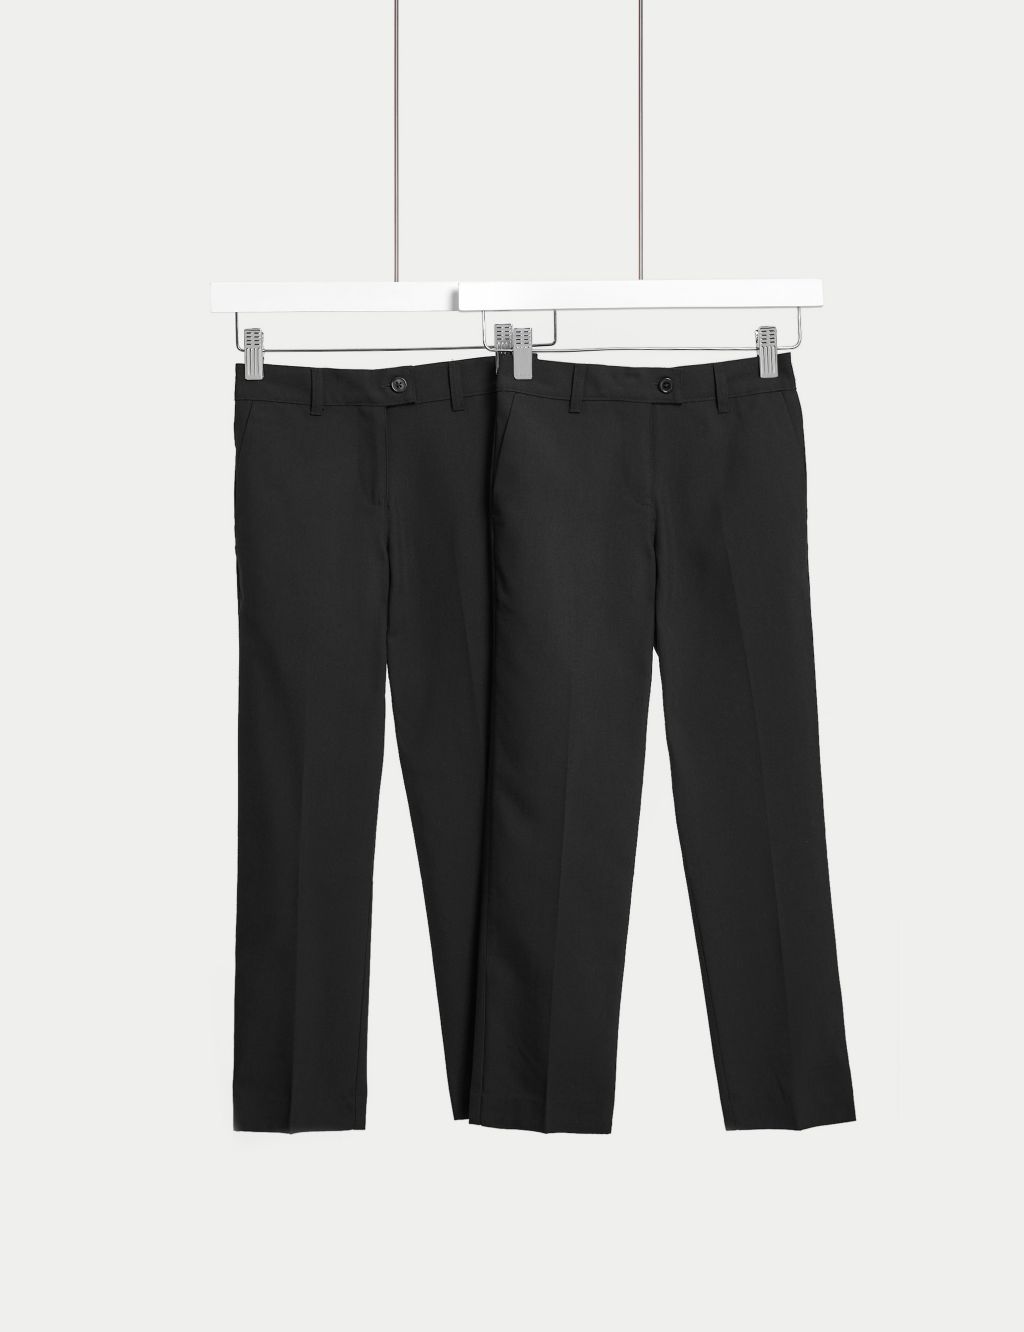 Akiihool Teen Girl Pants for School Girls Wide Leg Pants Kids Cute Print  Adjustable Waist School Uniform Pants (Dark Blue,9-10 Years)